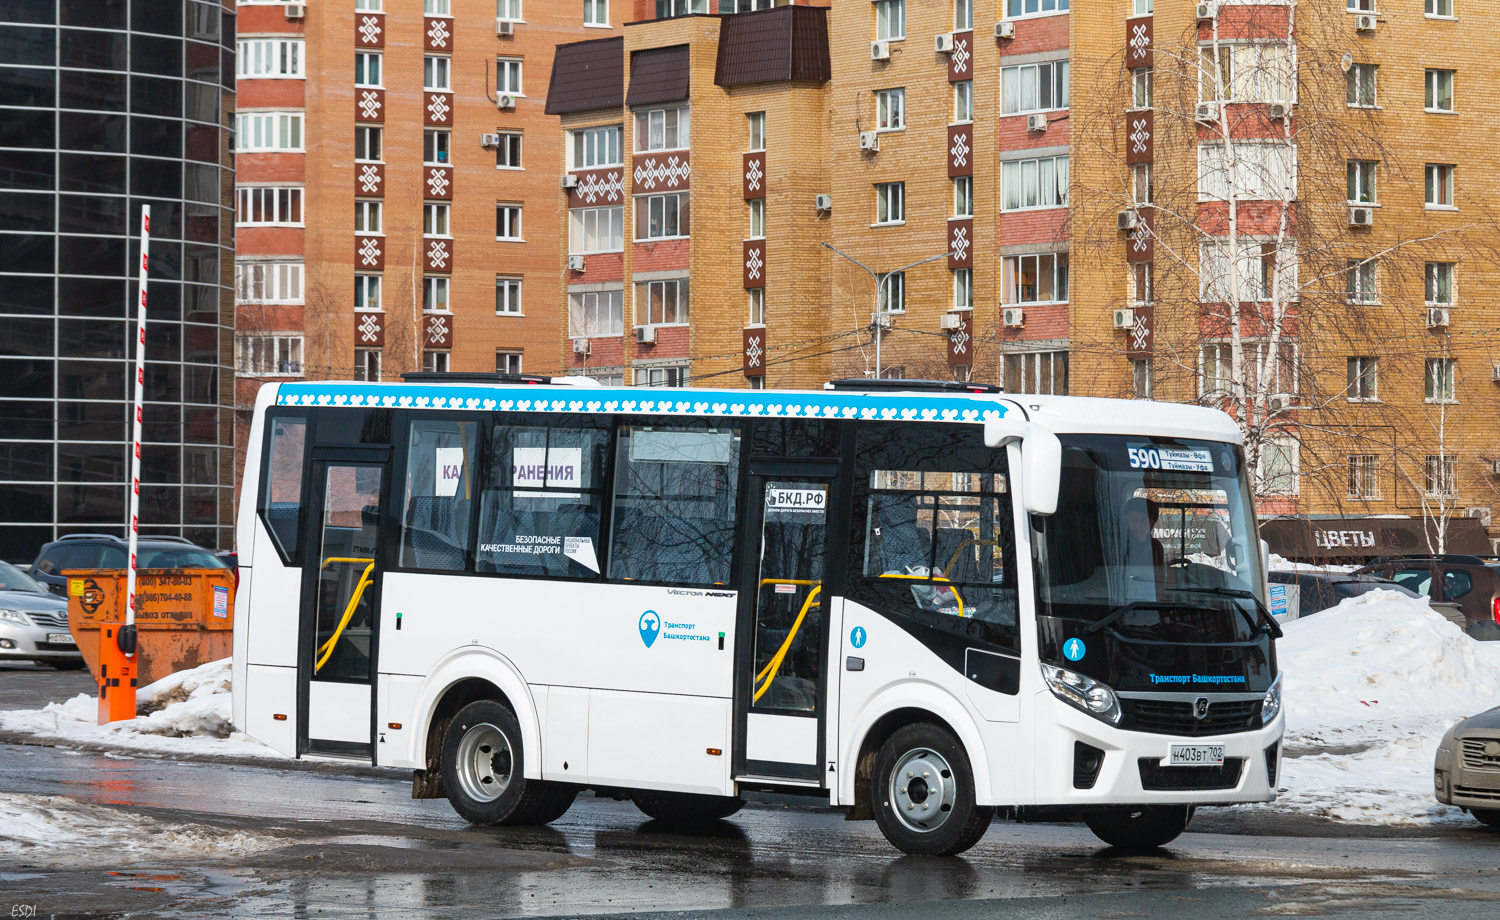 Μπασκορτοστάν, PAZ-320405-04 "Vector Next" # 0951; Μπασκορτοστάν — Presentation of new buses for Bashavtotrans